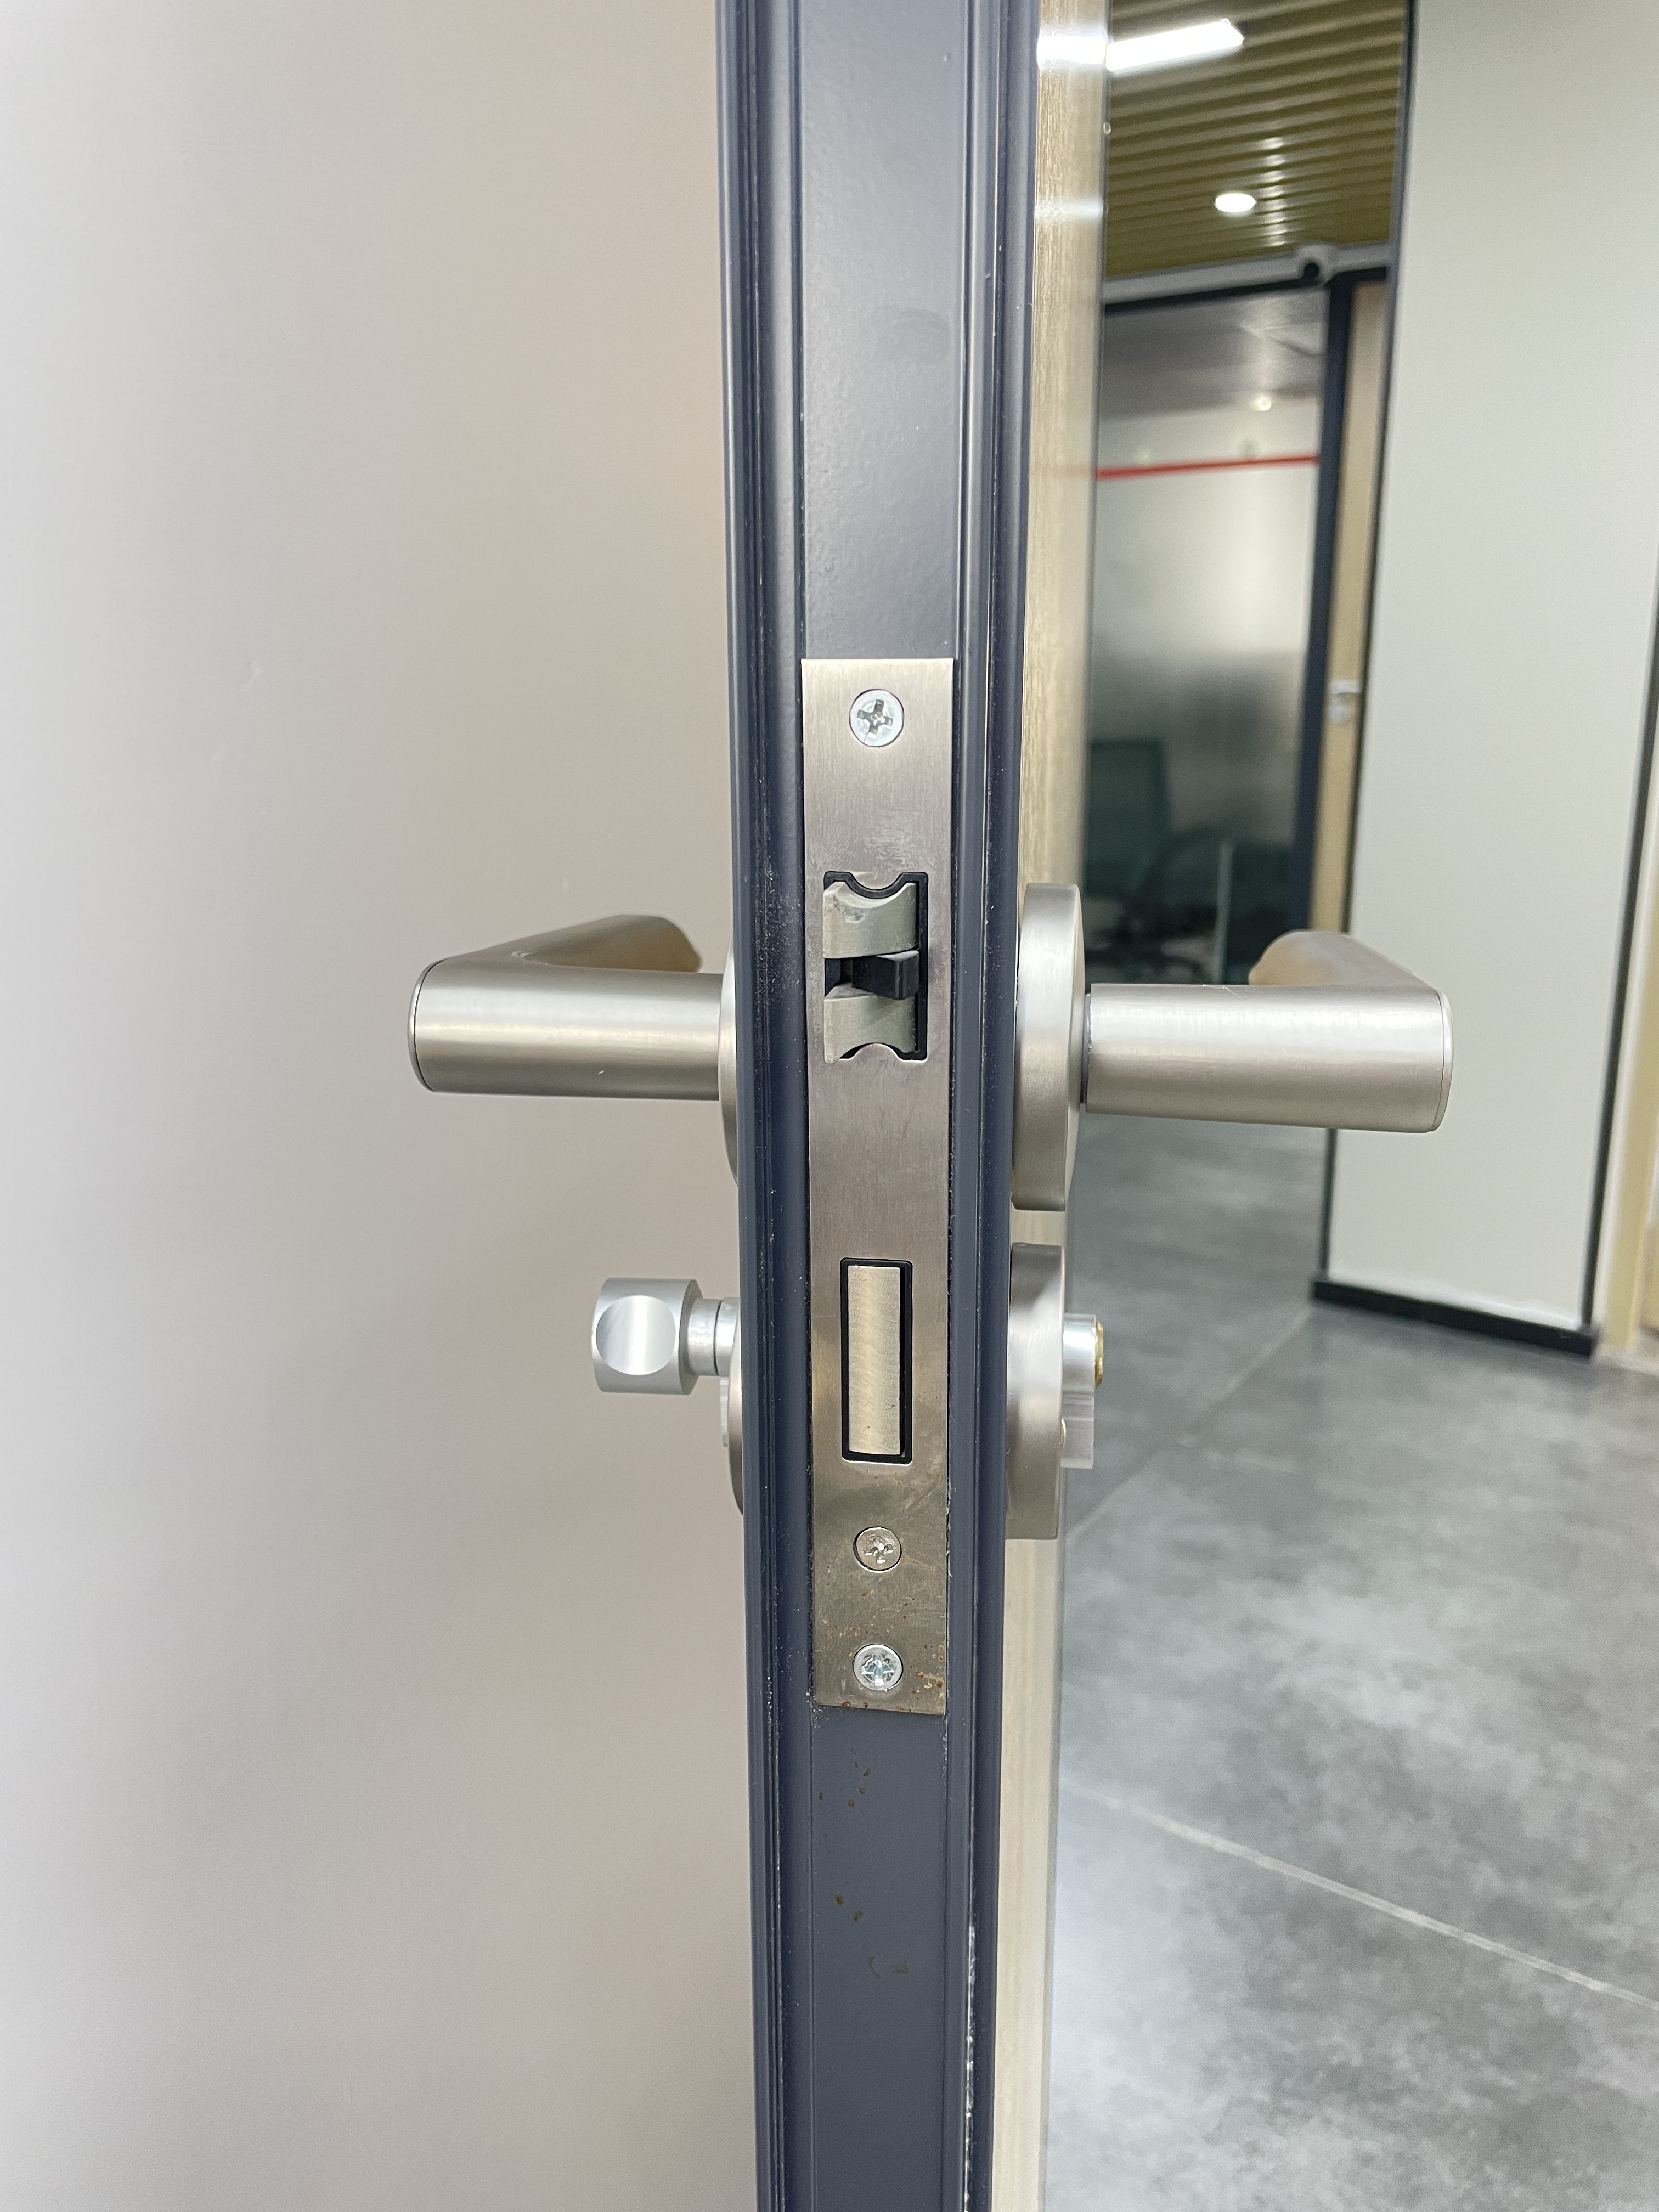 New Security Smart Door Lock，use fingerprint ,password,card to unlock 